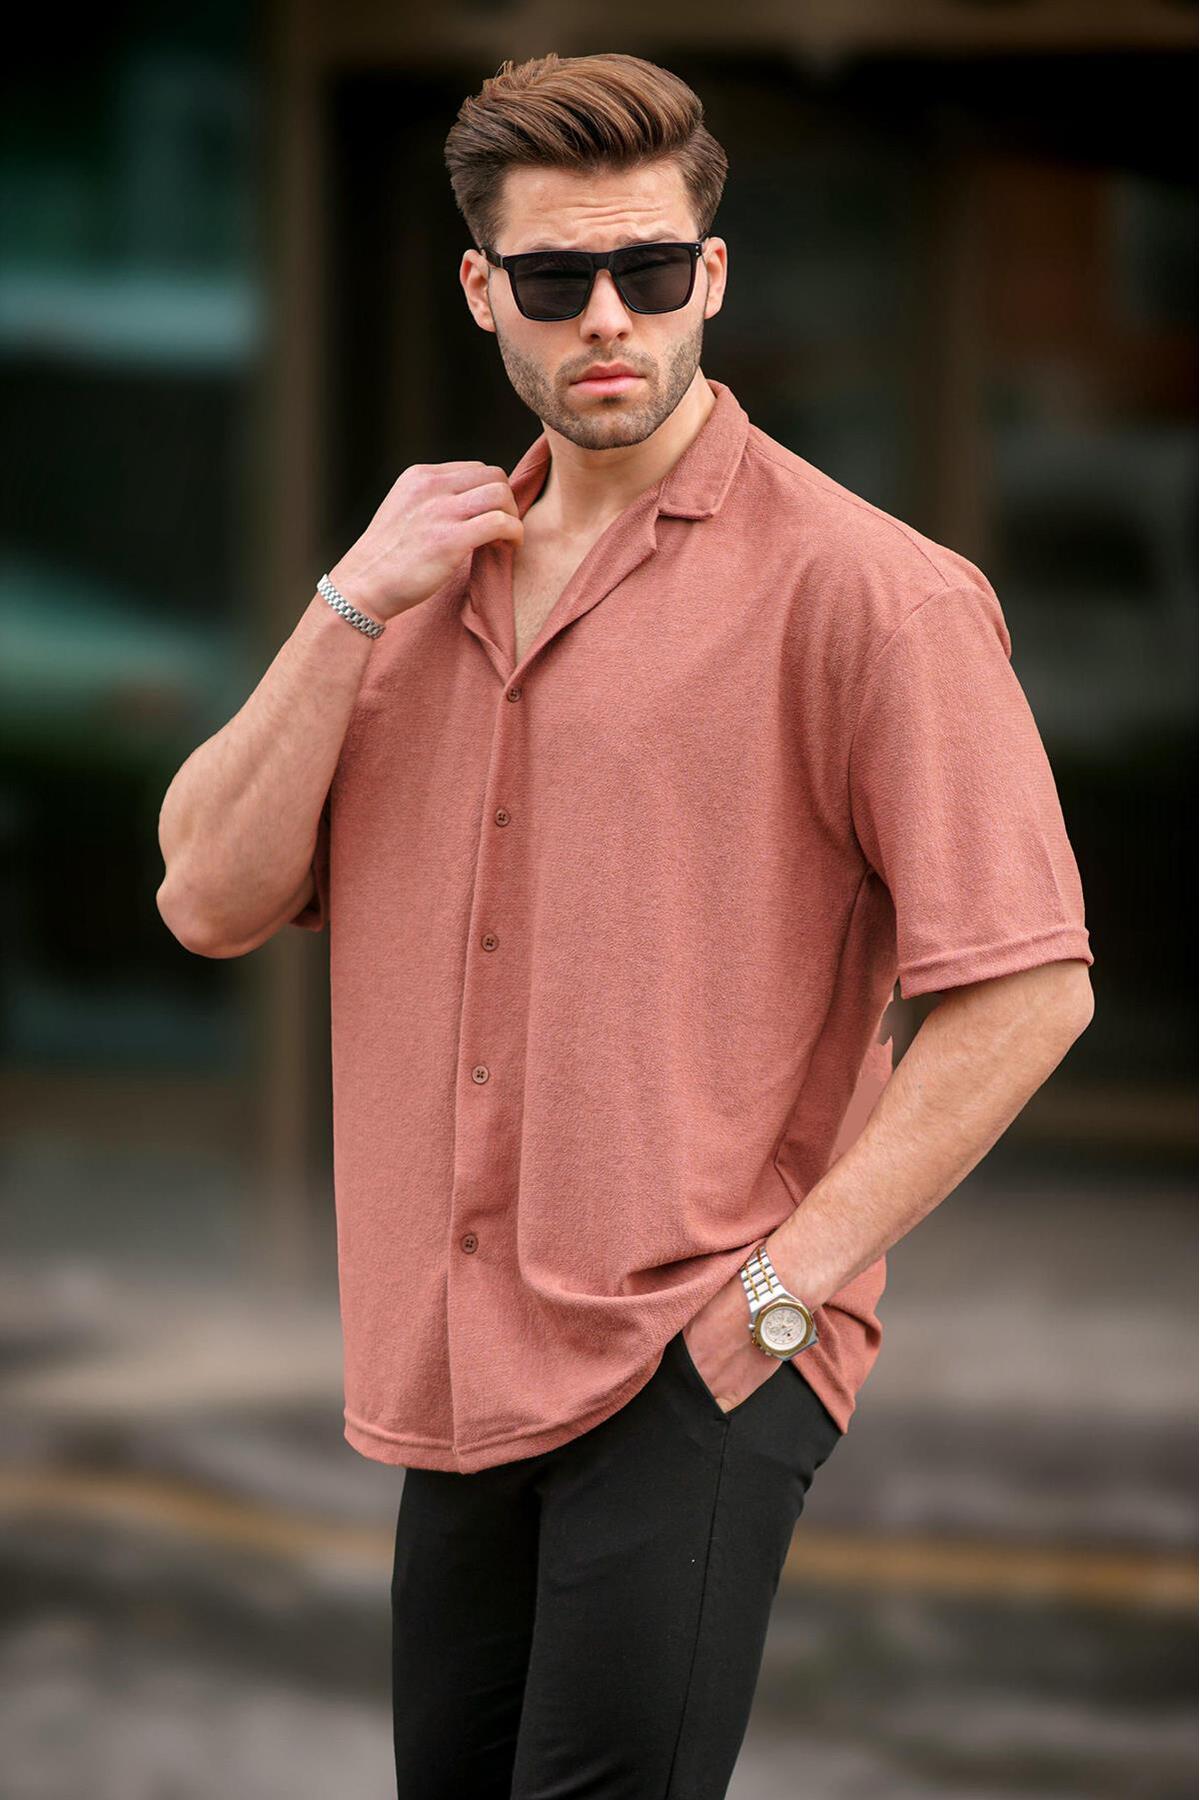 Madmext Men's Tile Short Sleeve Shirt 6736